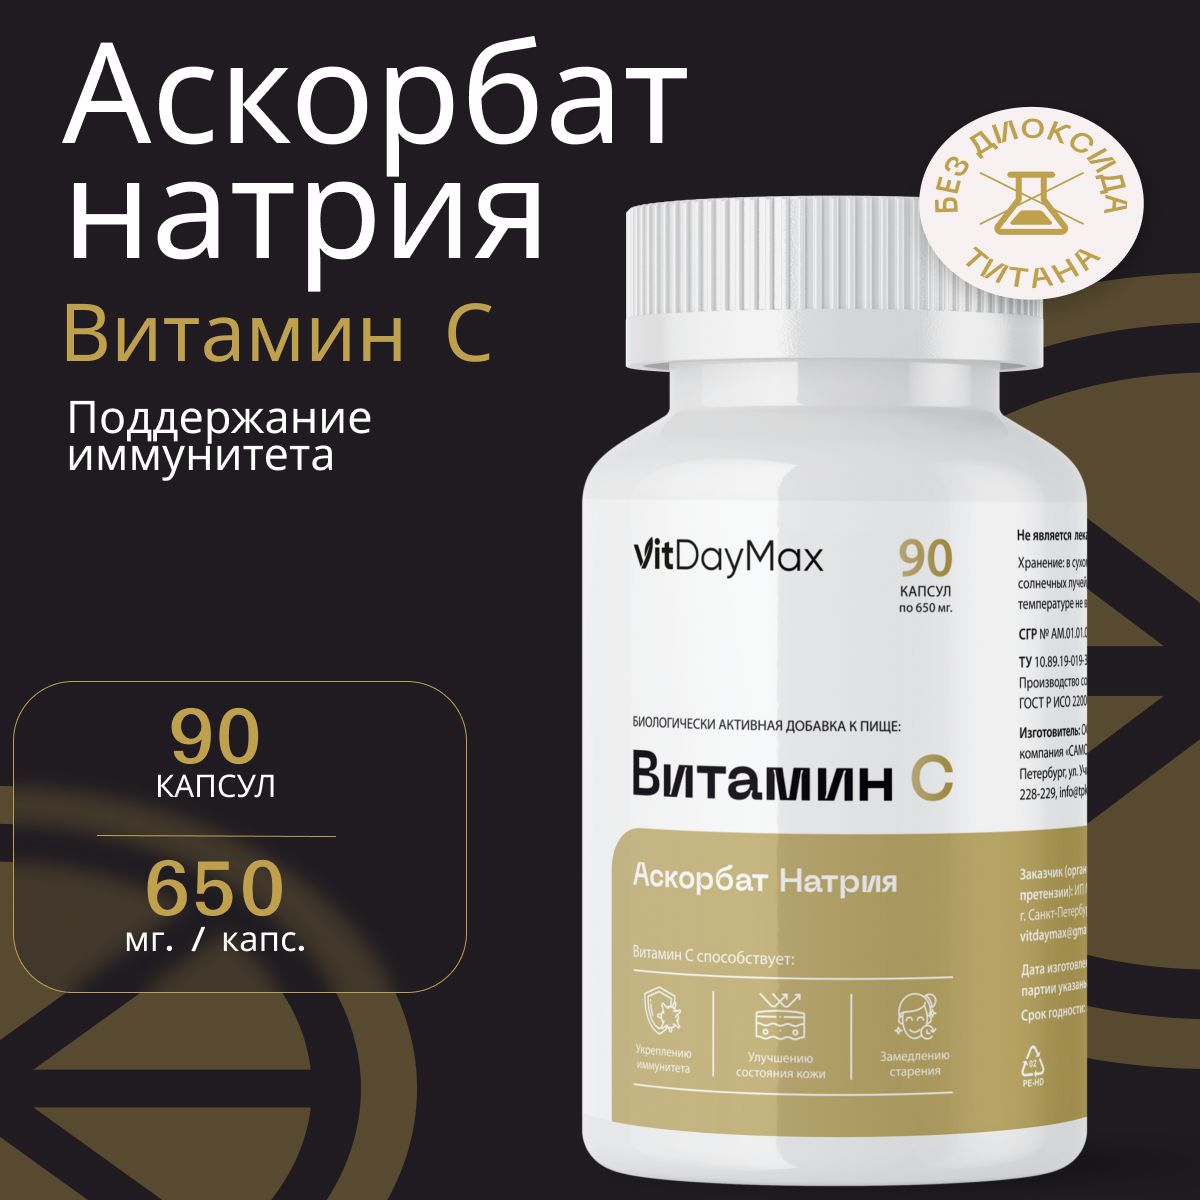 Аскобатнатриявкапсулах,ВитаминС